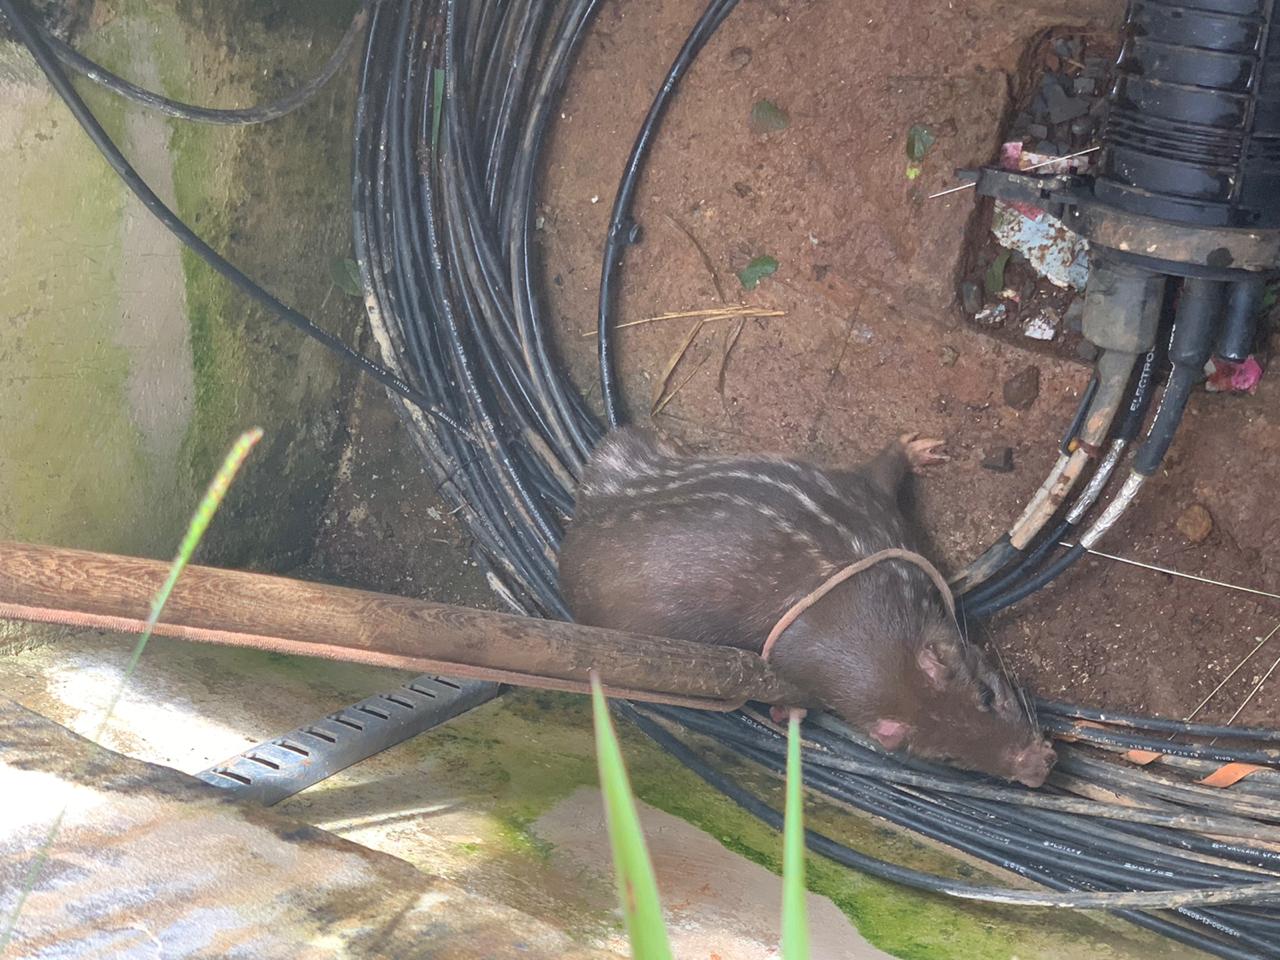 Uma paca, espécie de roedor, foi resgatada de uma caixa de concreto subterrânea de sistema de telefonia, em Luziânia. (Foto: Divulgação/Corpo de Bombeiros)